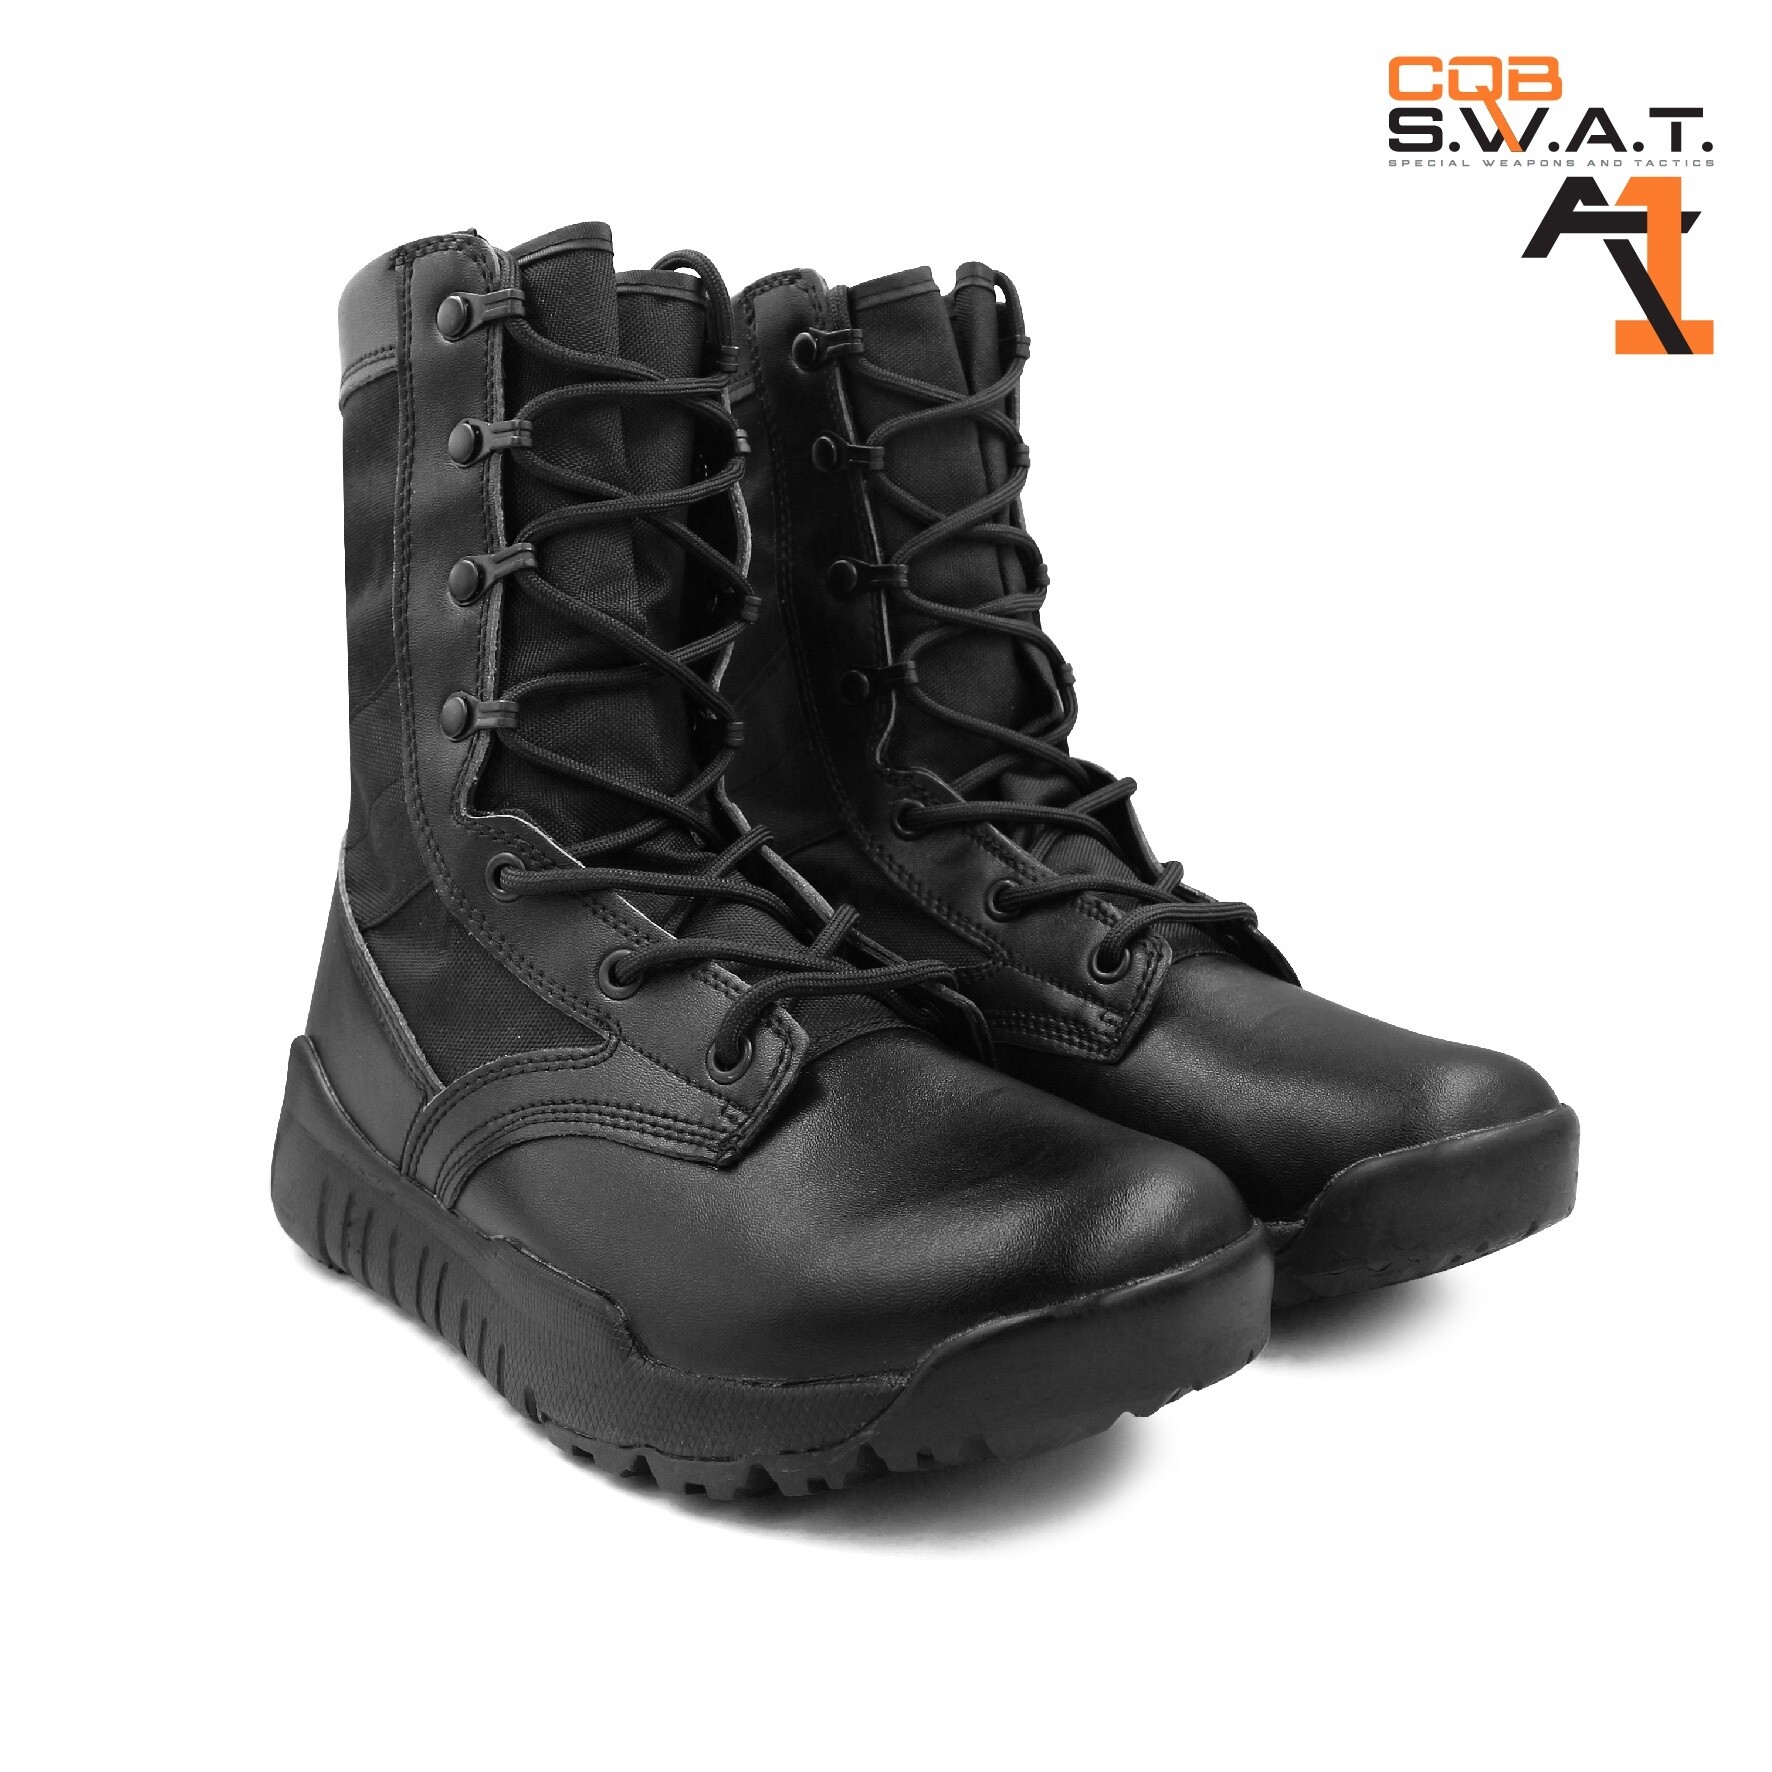 รองเท้า CQB. SWAT A1 รองเท้าคอมแบท จังเกิ้ล A1 รองเท้าทหาร รองเท้า : BY Tactical unit